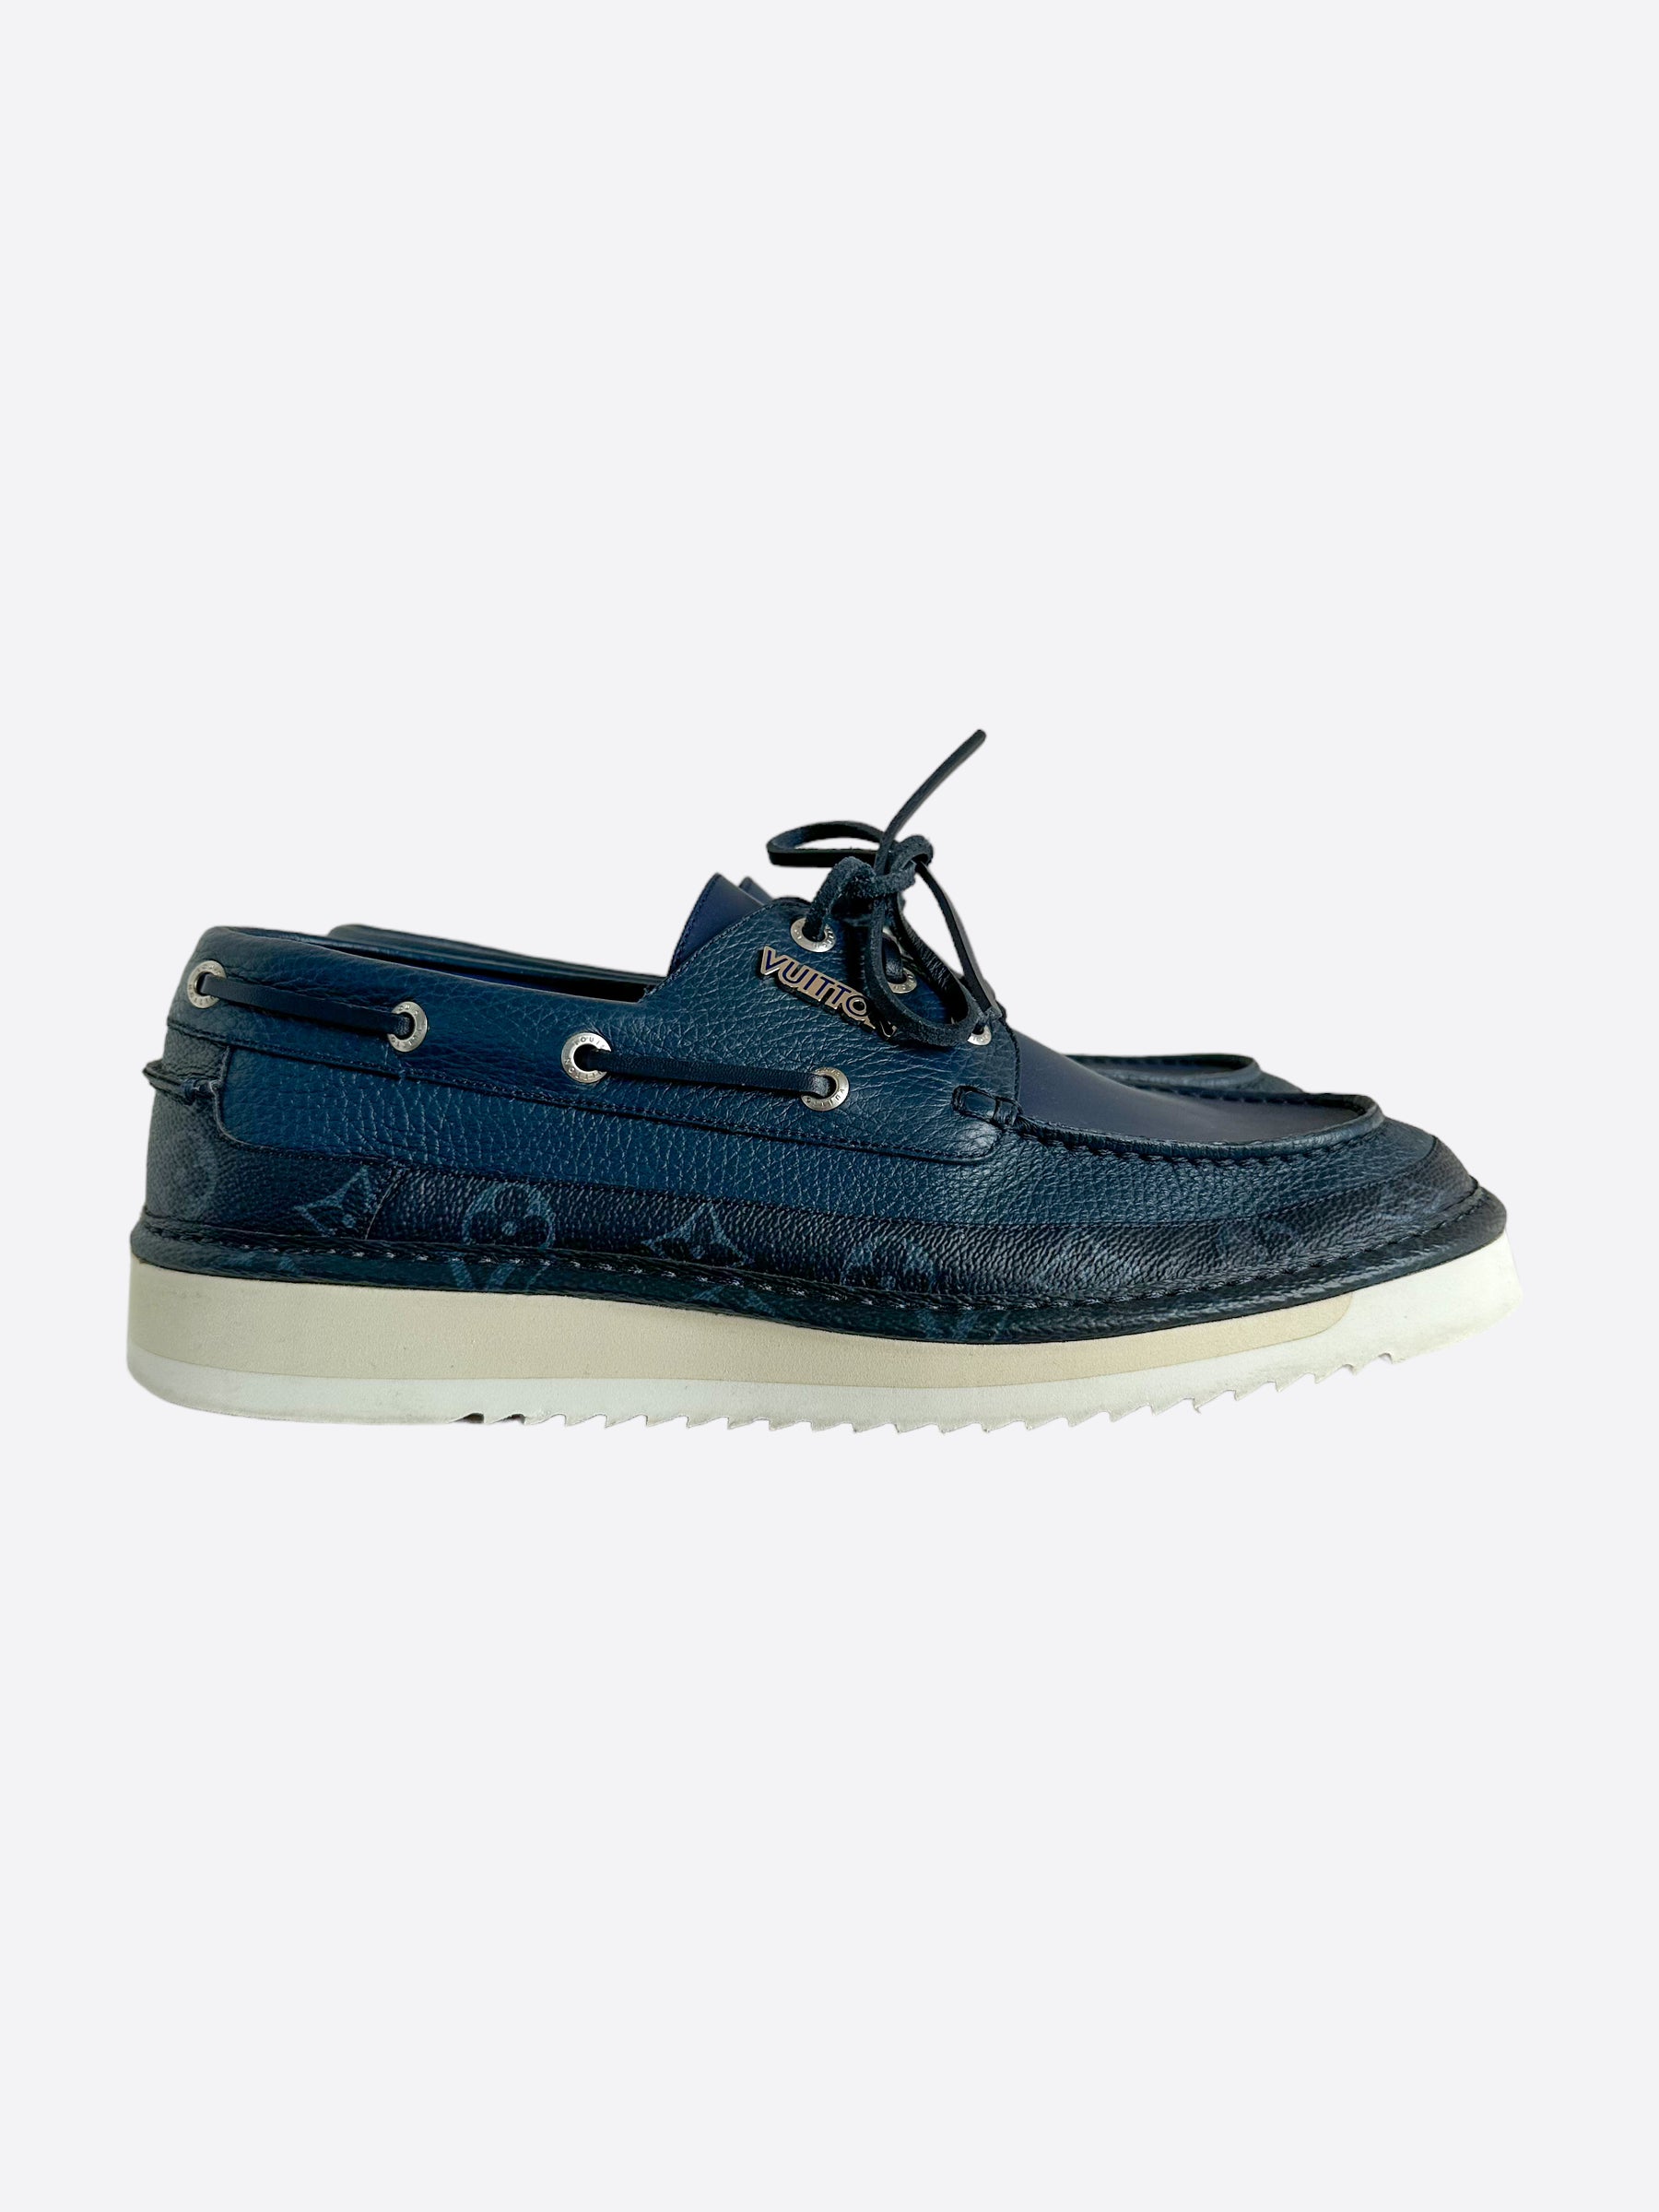 Louis Vuitton Blue Canvas Boat Shoes Size 45 Louis Vuitton